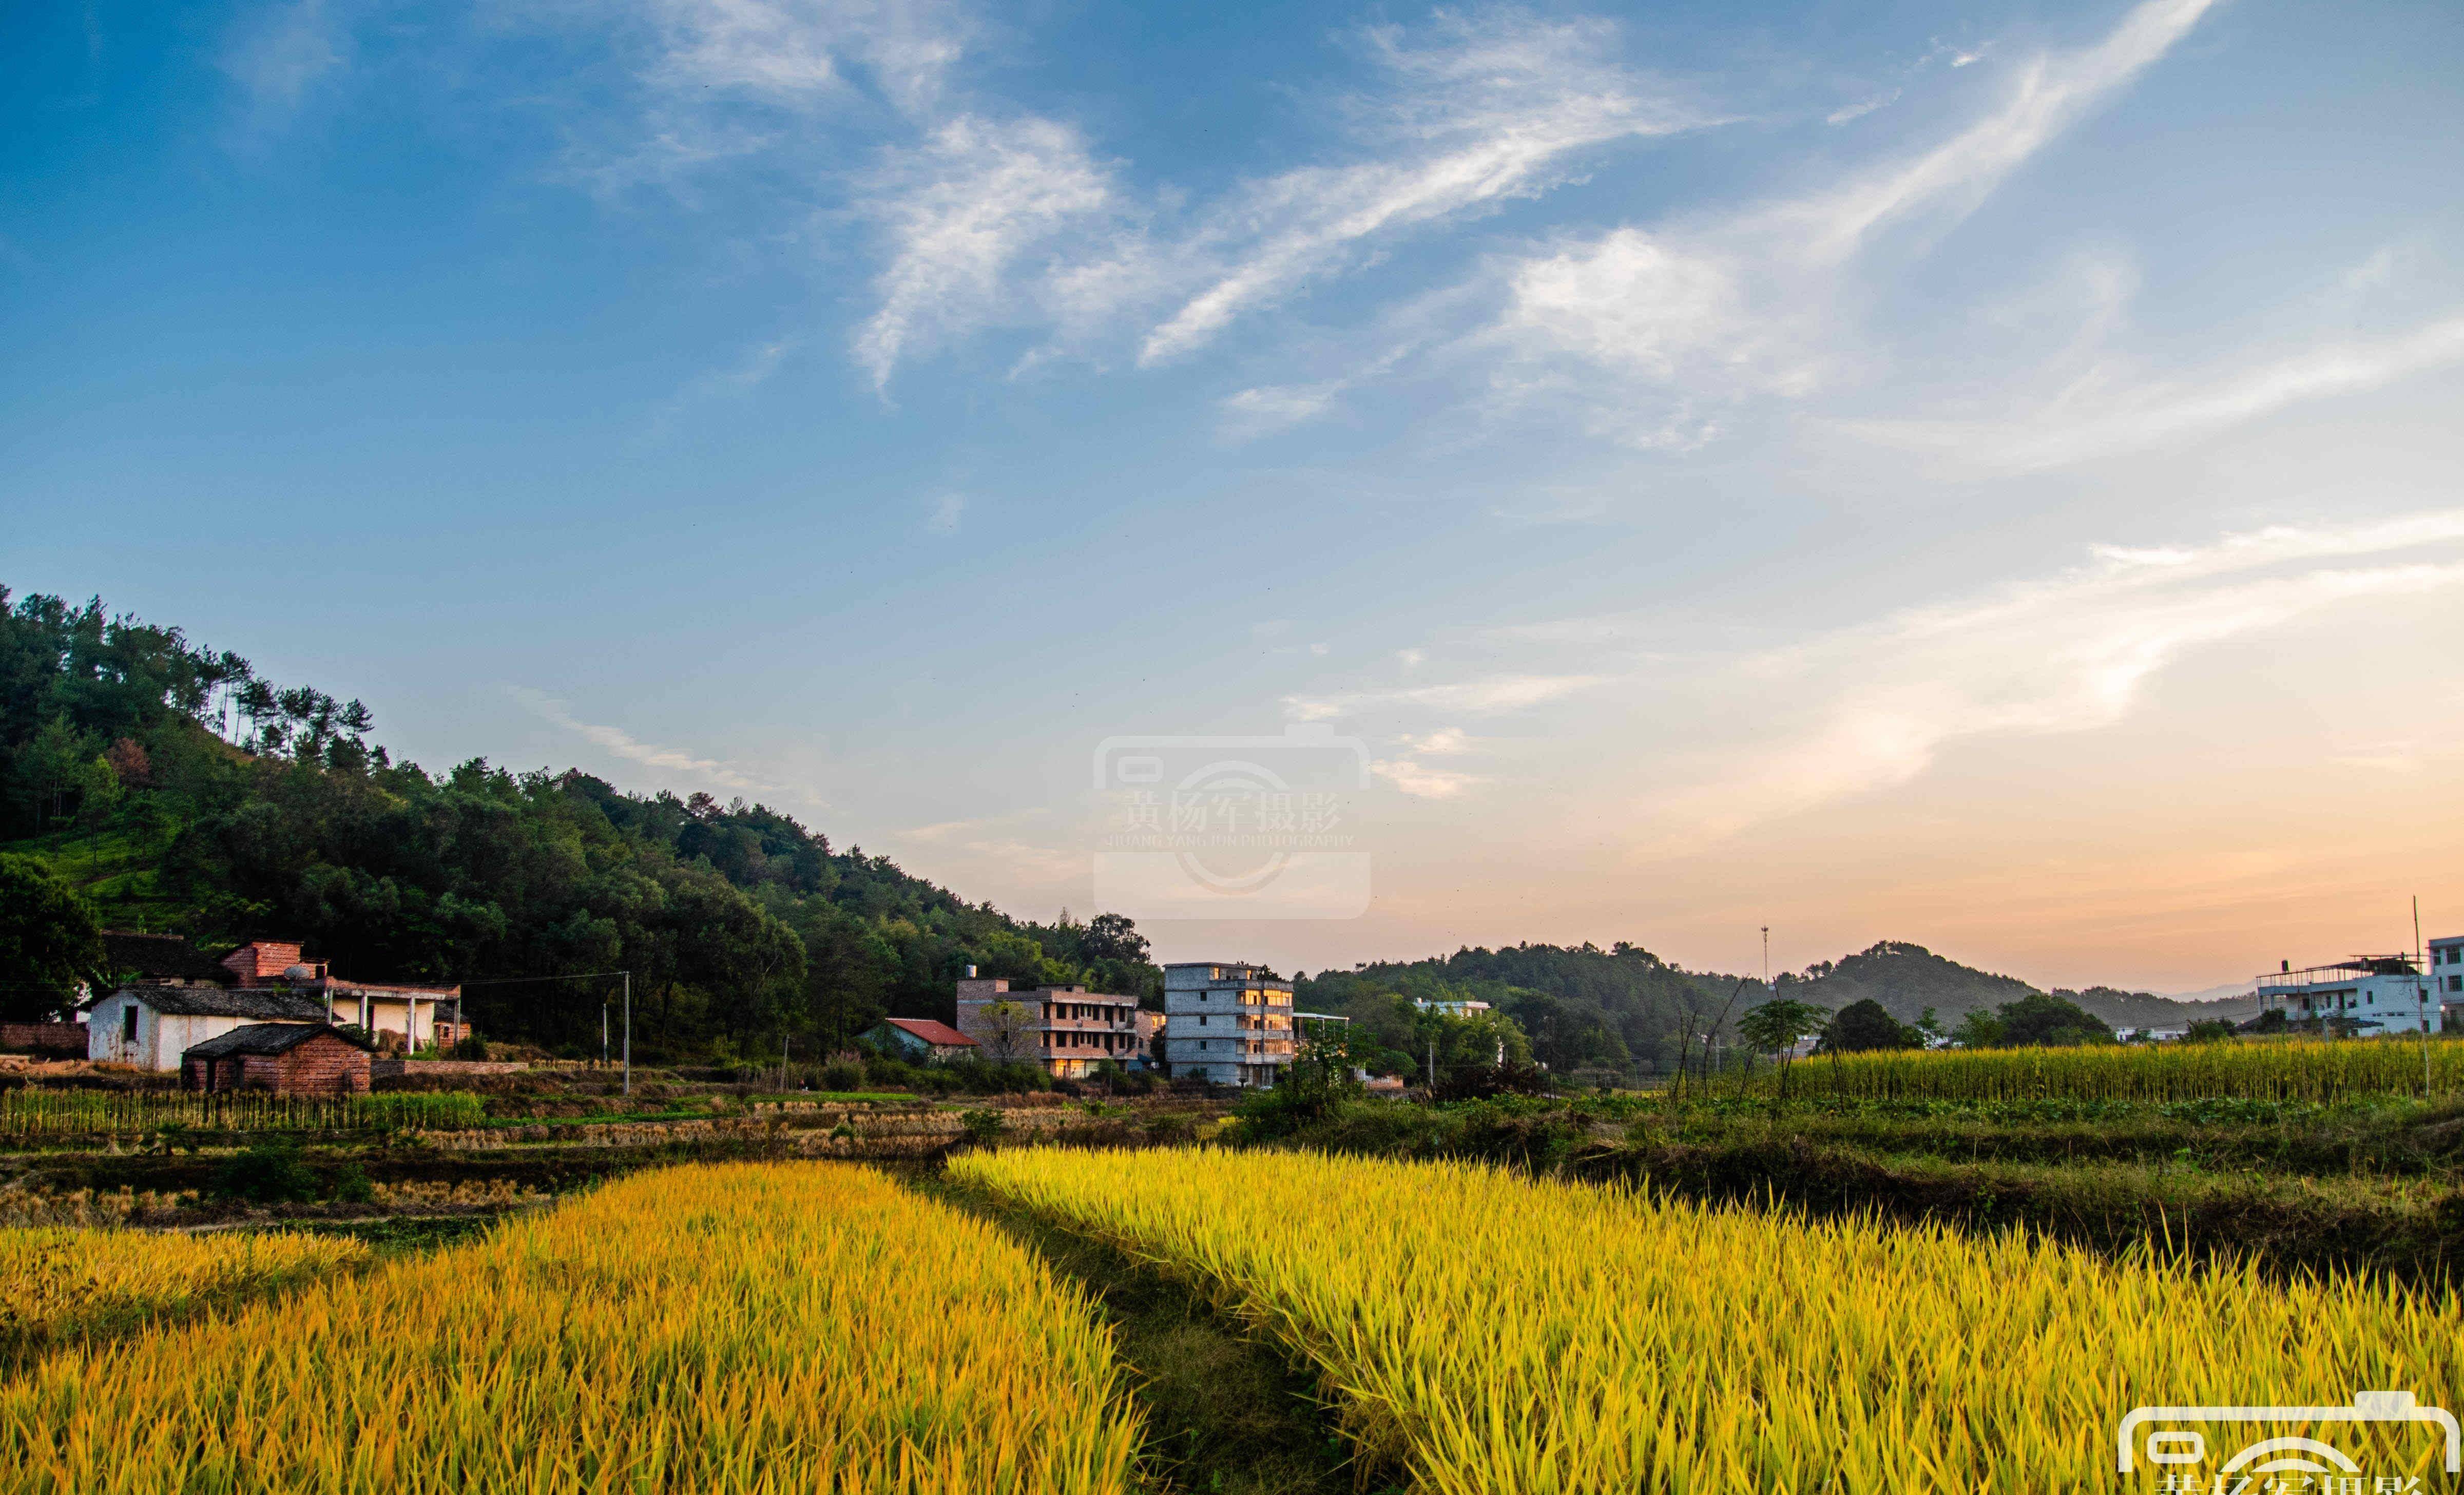 江西河田村的乡村秋色,稻浪金黄景色美如画,距于都城仅11公里